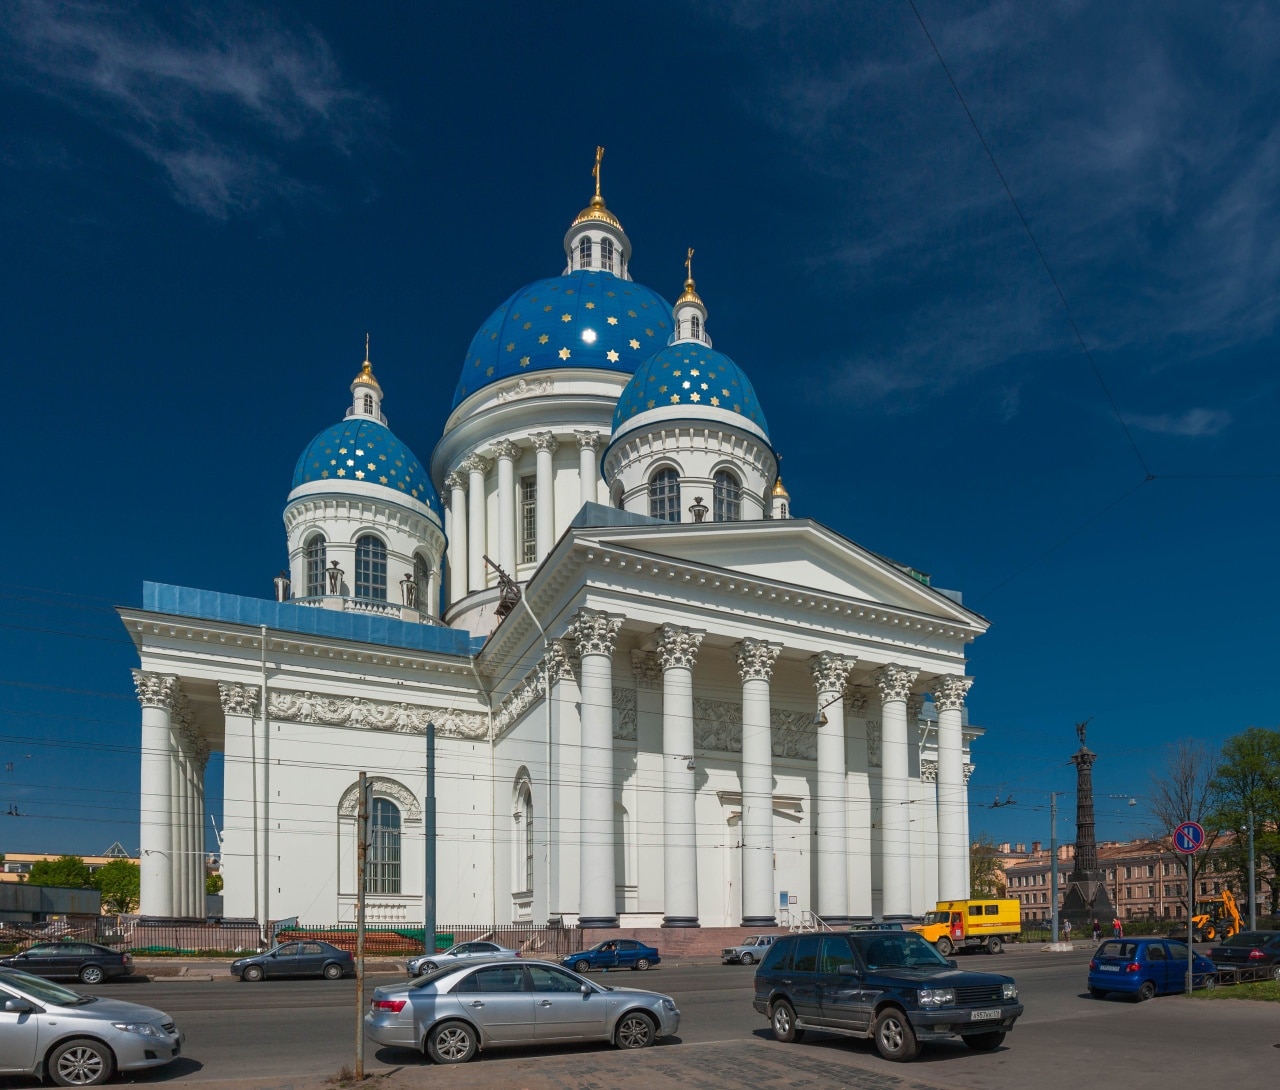 St. Petersburg, Saint Petersburg, Russia